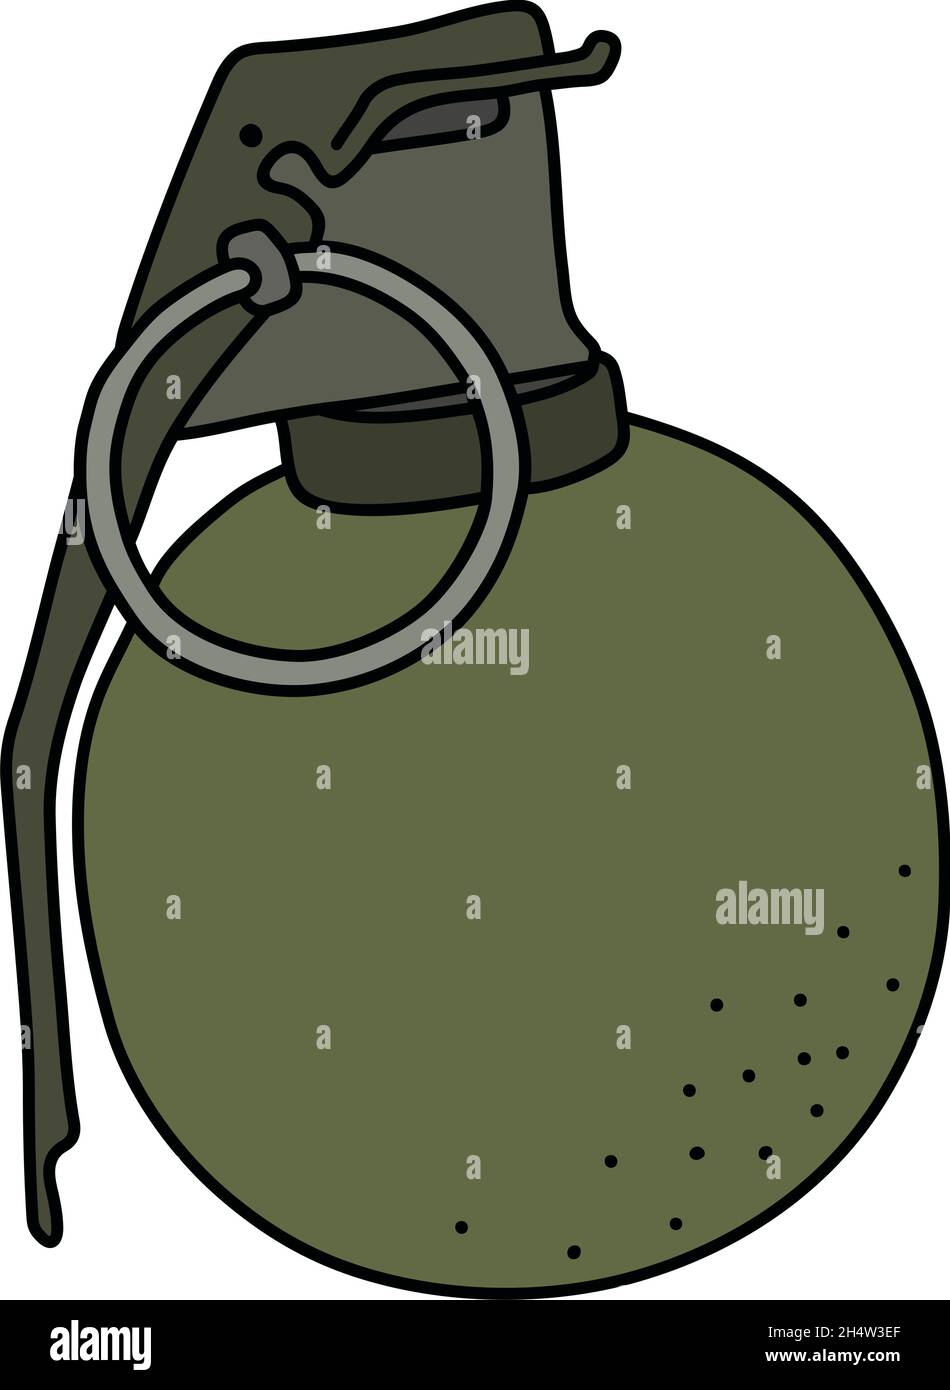 La vecchia granata a mano kaki offensiva Illustrazione Vettoriale